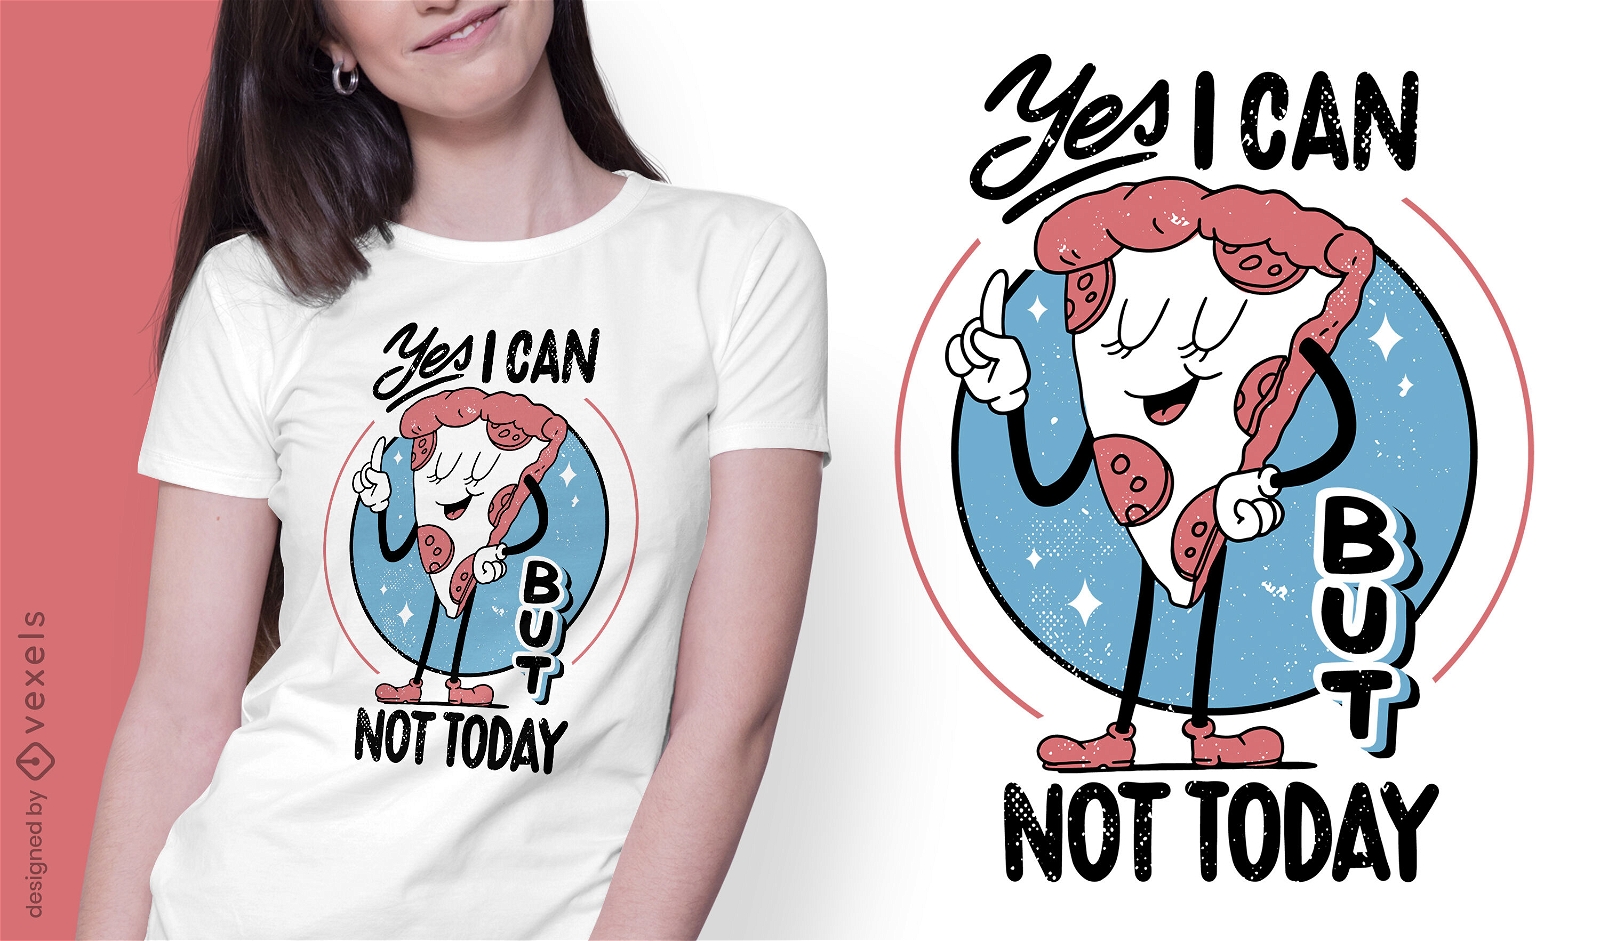 Design engra?ado de t-shirt anti-social para fatias de pizza